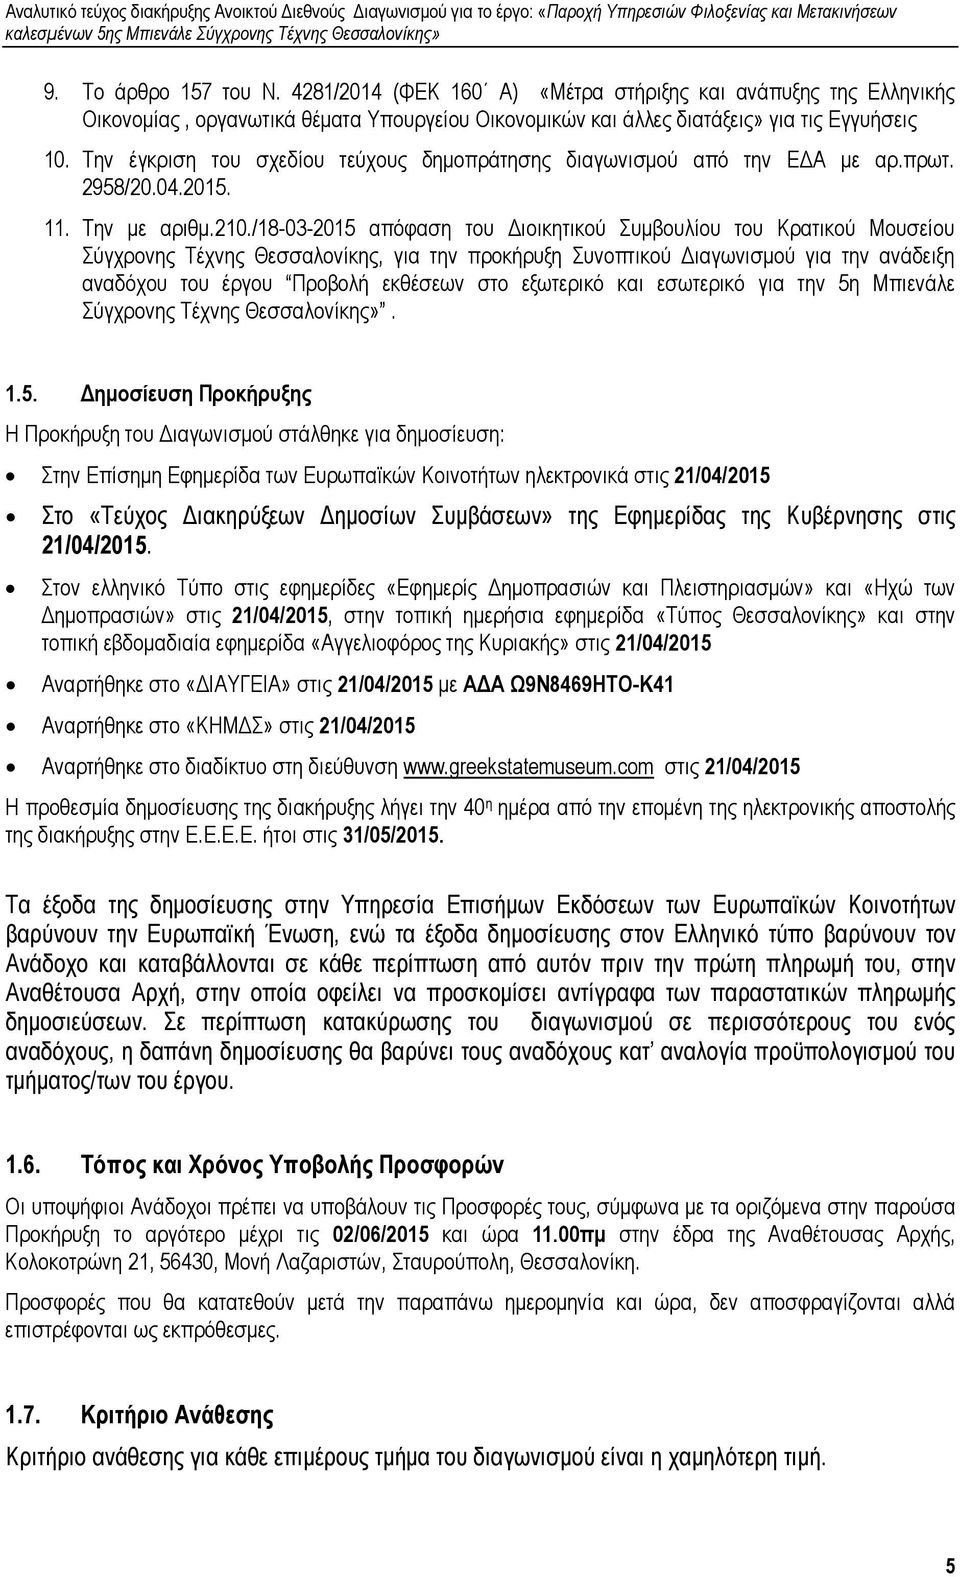 /18-03-2015 απόφαση του ιοικητικού Συµβουλίου του Κρατικού Μουσείου Σύγχρονης Τέχνης Θεσσαλονίκης, για την προκήρυξη Συνοπτικού ιαγωνισµού για την ανάδειξη αναδόχου του έργου Προβολή εκθέσεων στο